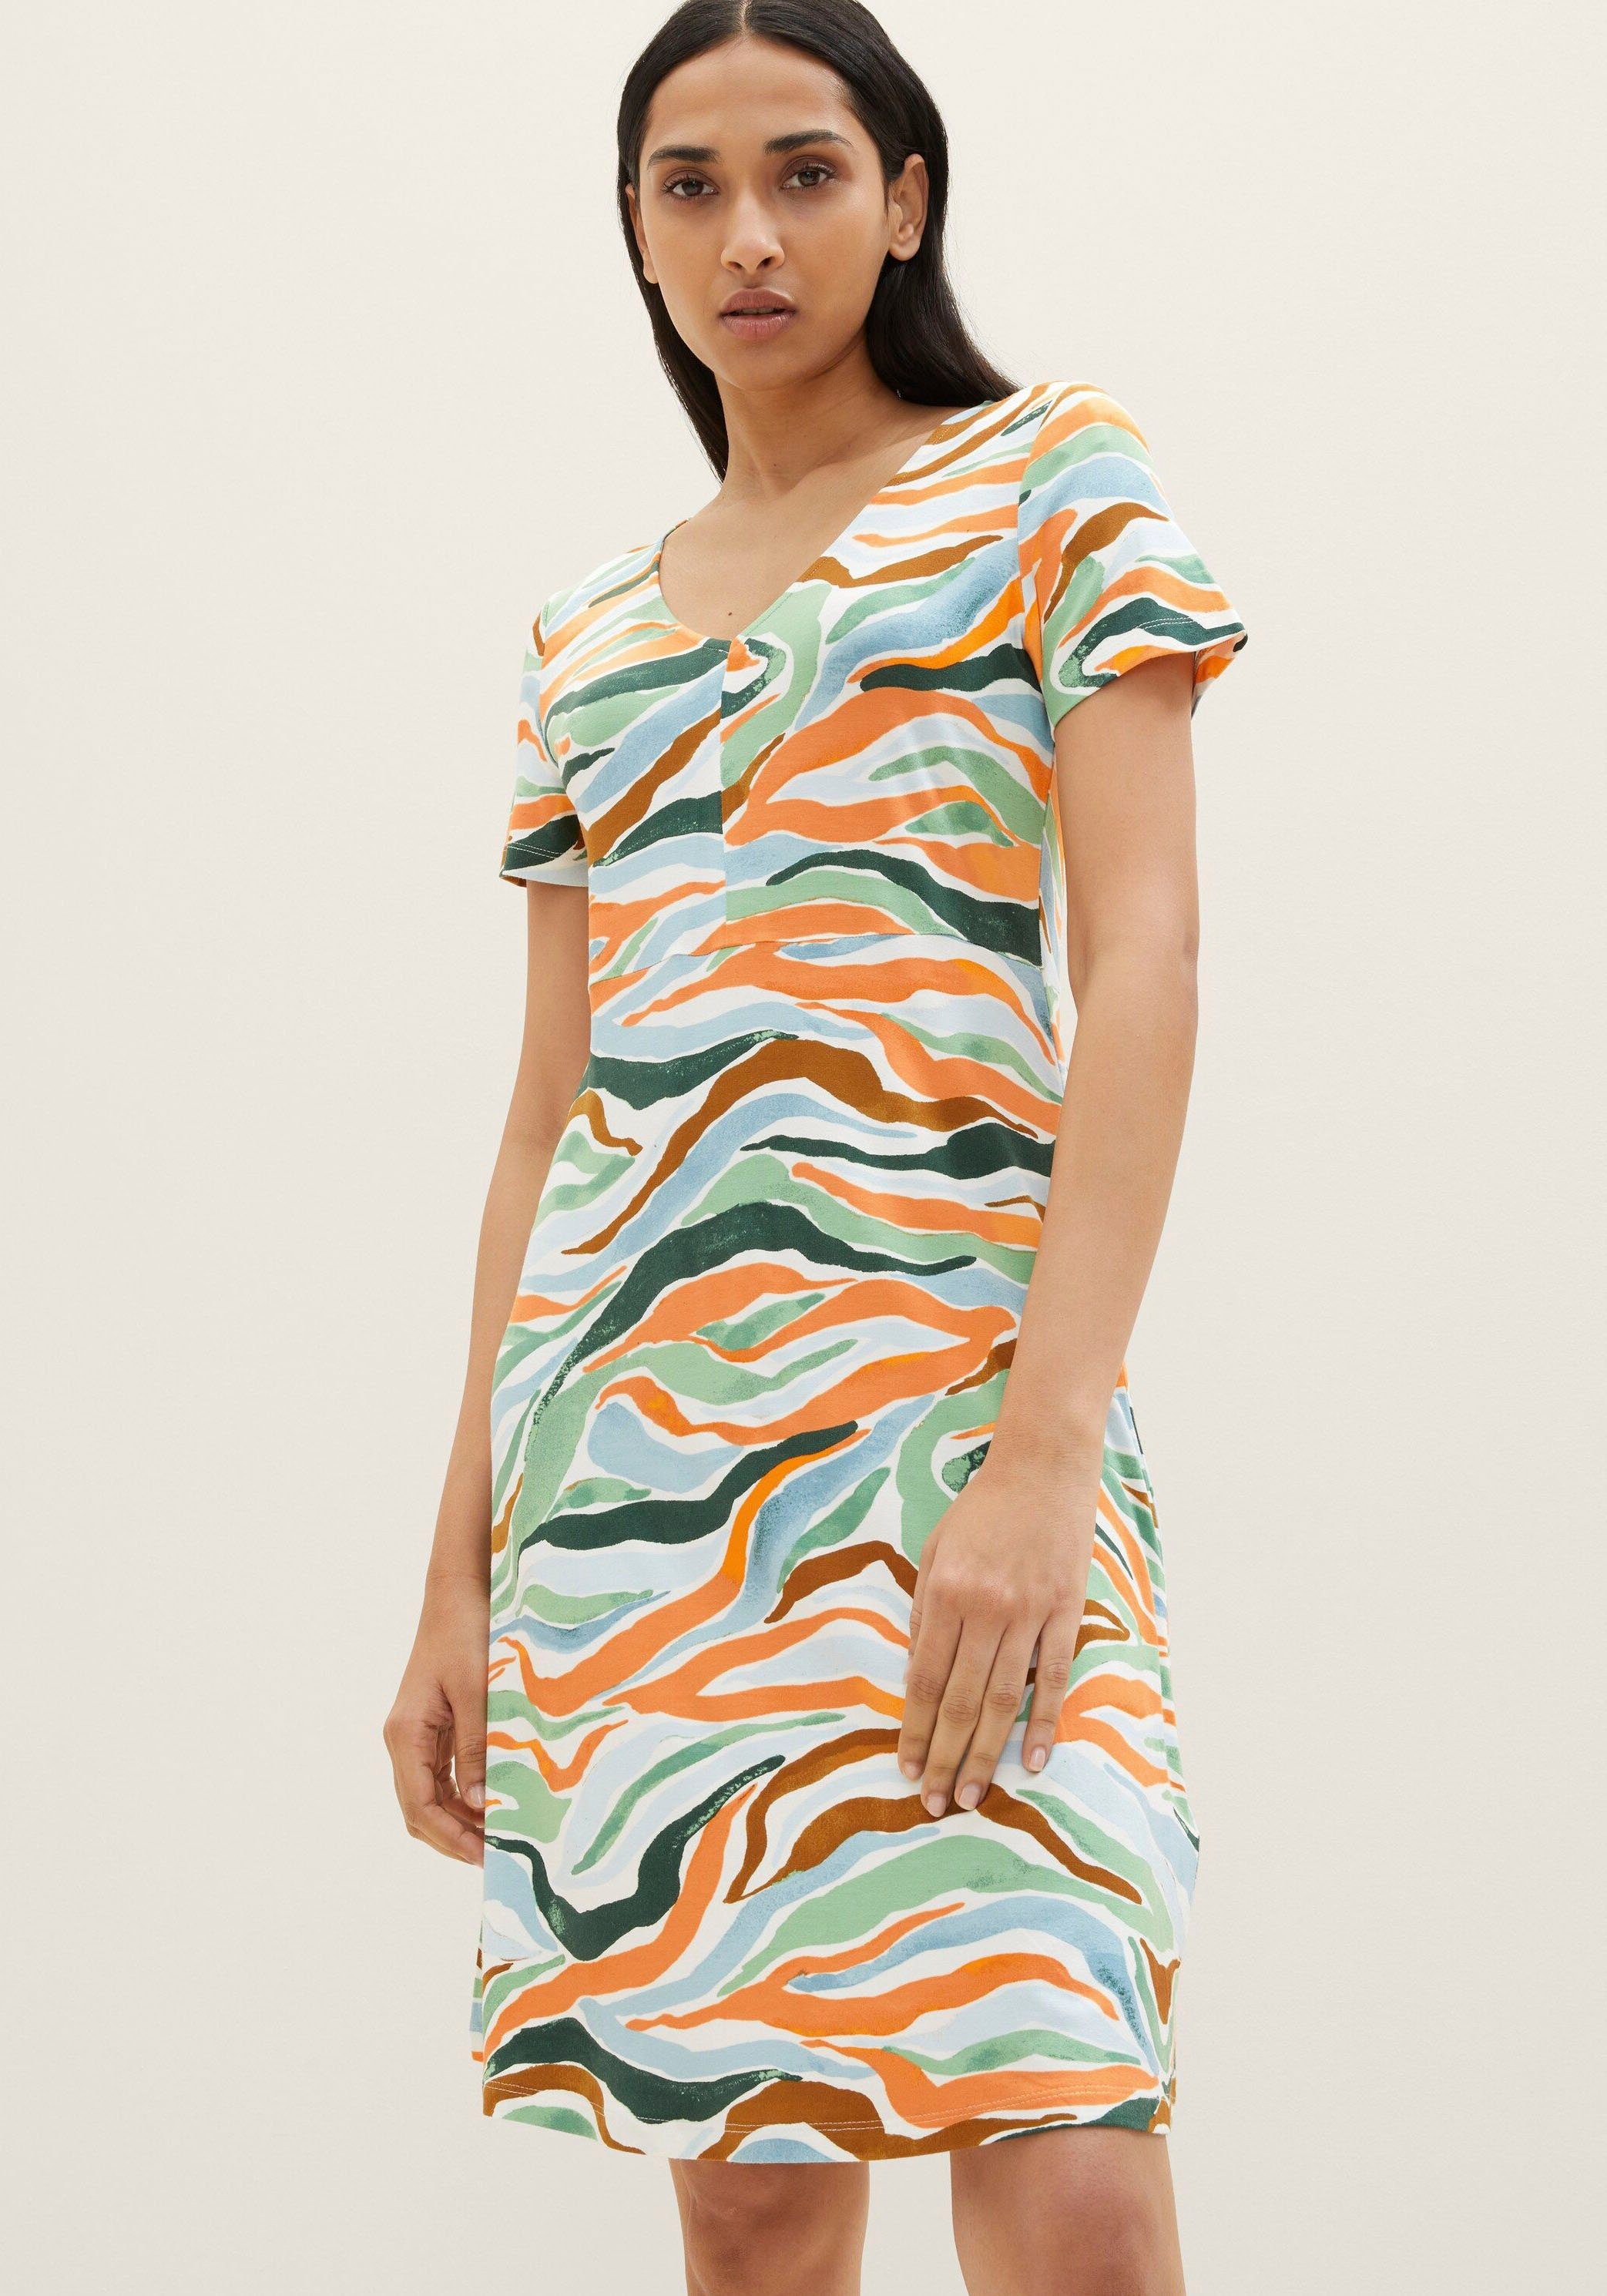 TOM TAILOR design Jerseykleid Allover-Druck modischem colorful mit wavy